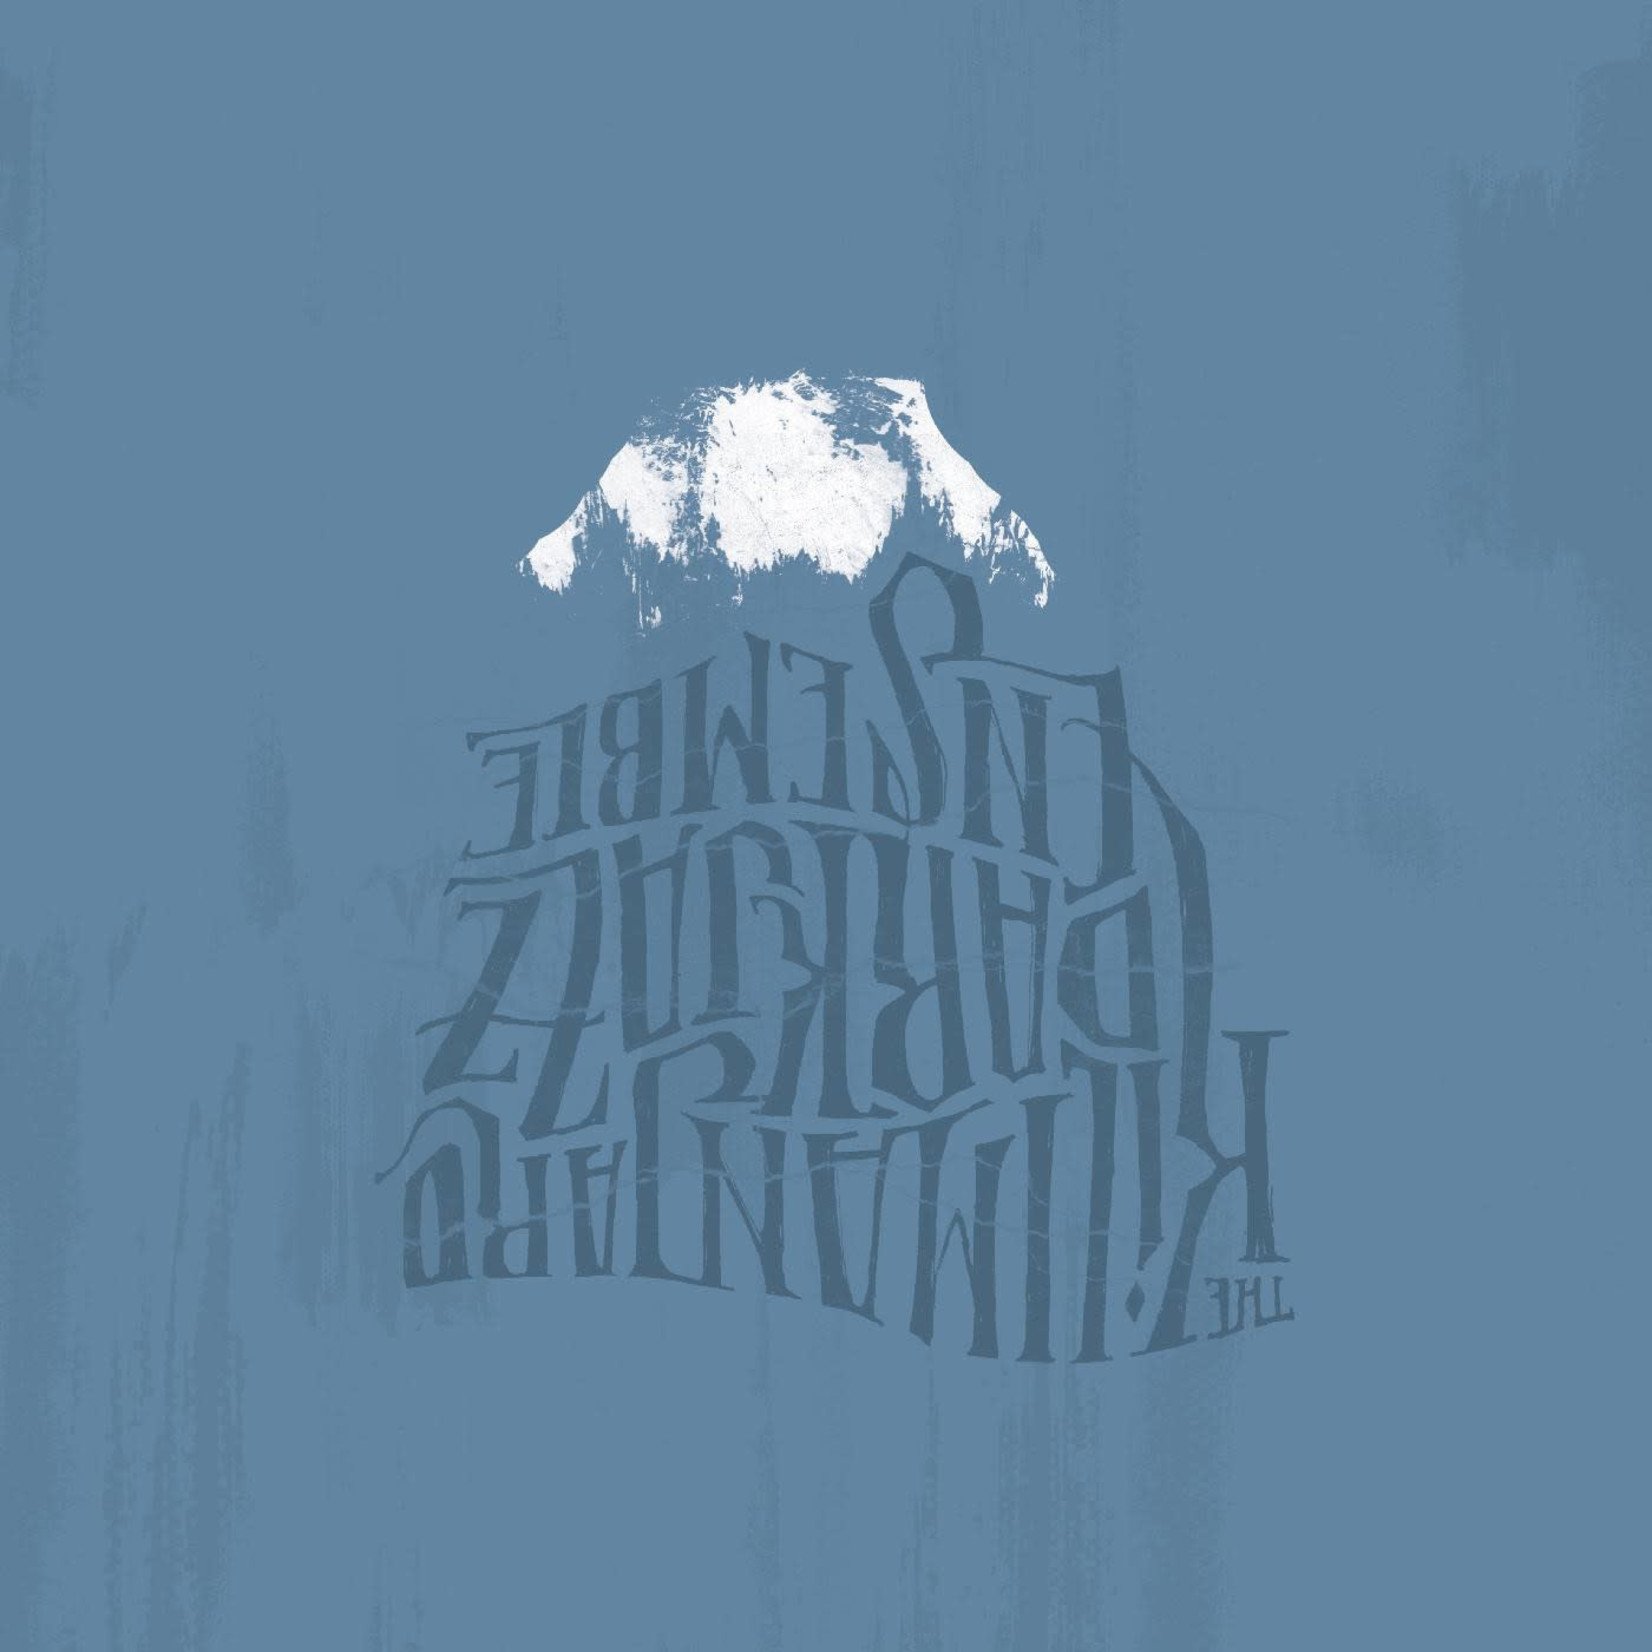 [New] The Kilimanjaro Darkjazz Ensemble - The Kilimanjaro Darkjazz Ensemble (2LP, indie exclusive red vinyl)